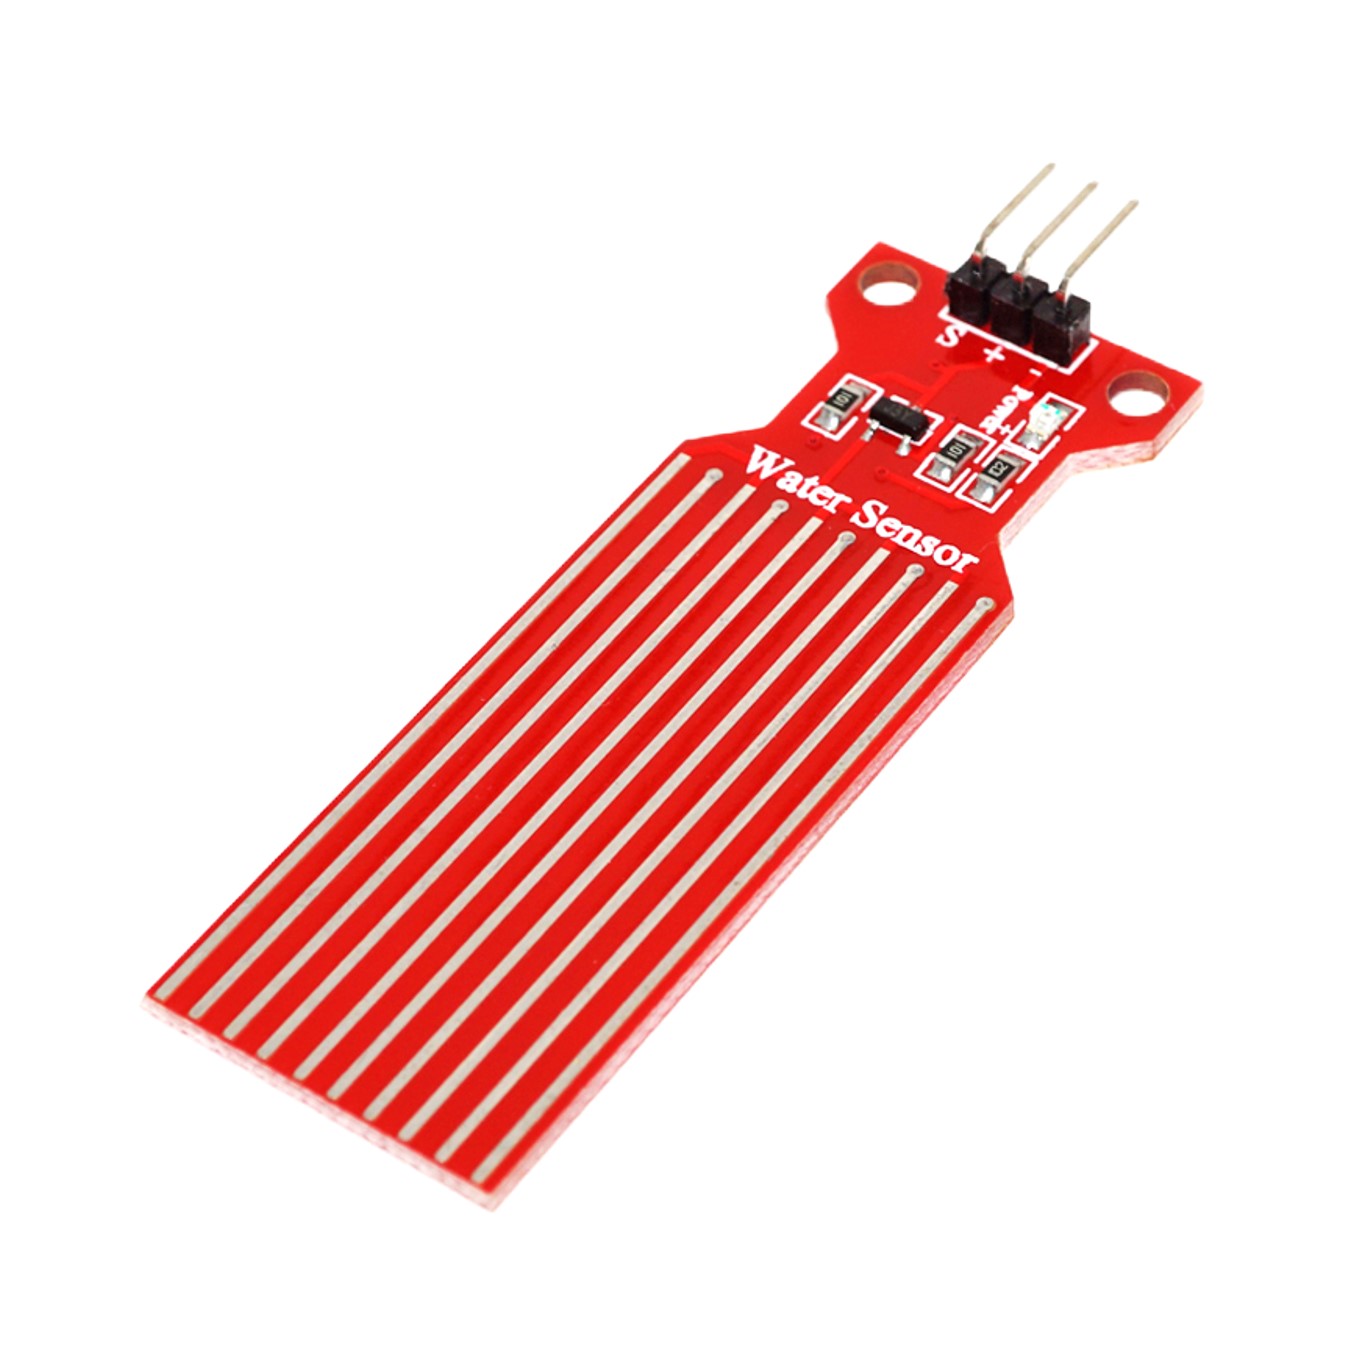 Water Sensor Detector for Arduino, ESP32, ESP8266, Raspberry Pi, 5 pieces